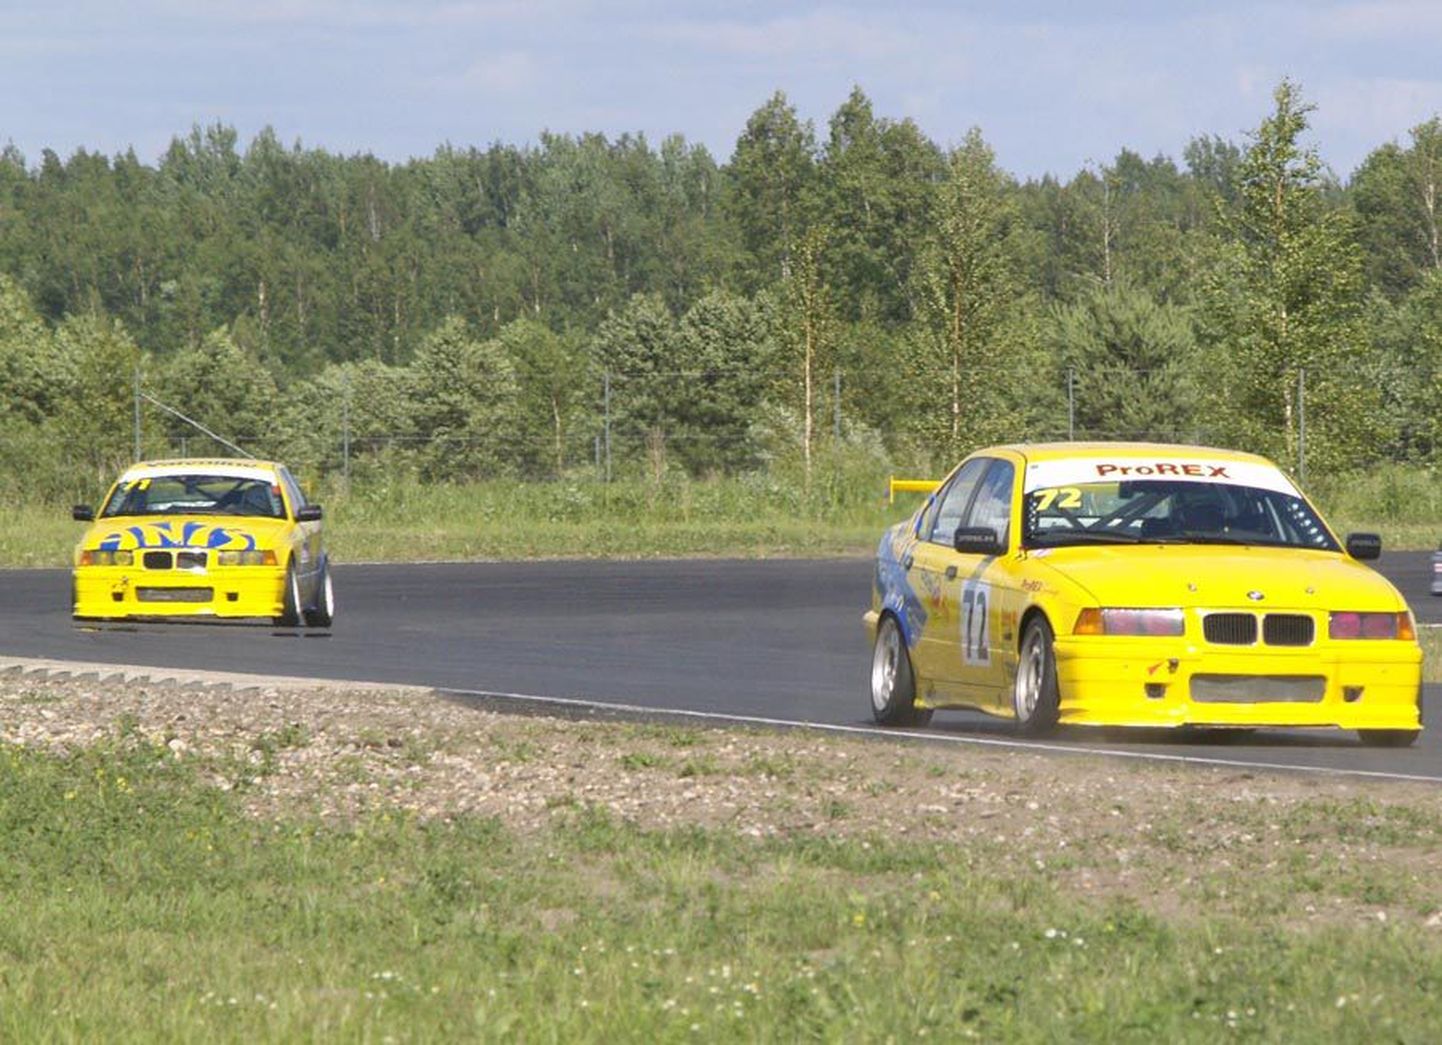 BMW 325 klassi esimeses sõidus oli korraks ka olukord, et juhtis kaks kollast Viljandi autot. Fotol on Mikk Maaten ees ja Tõnis Hommik tema järel.